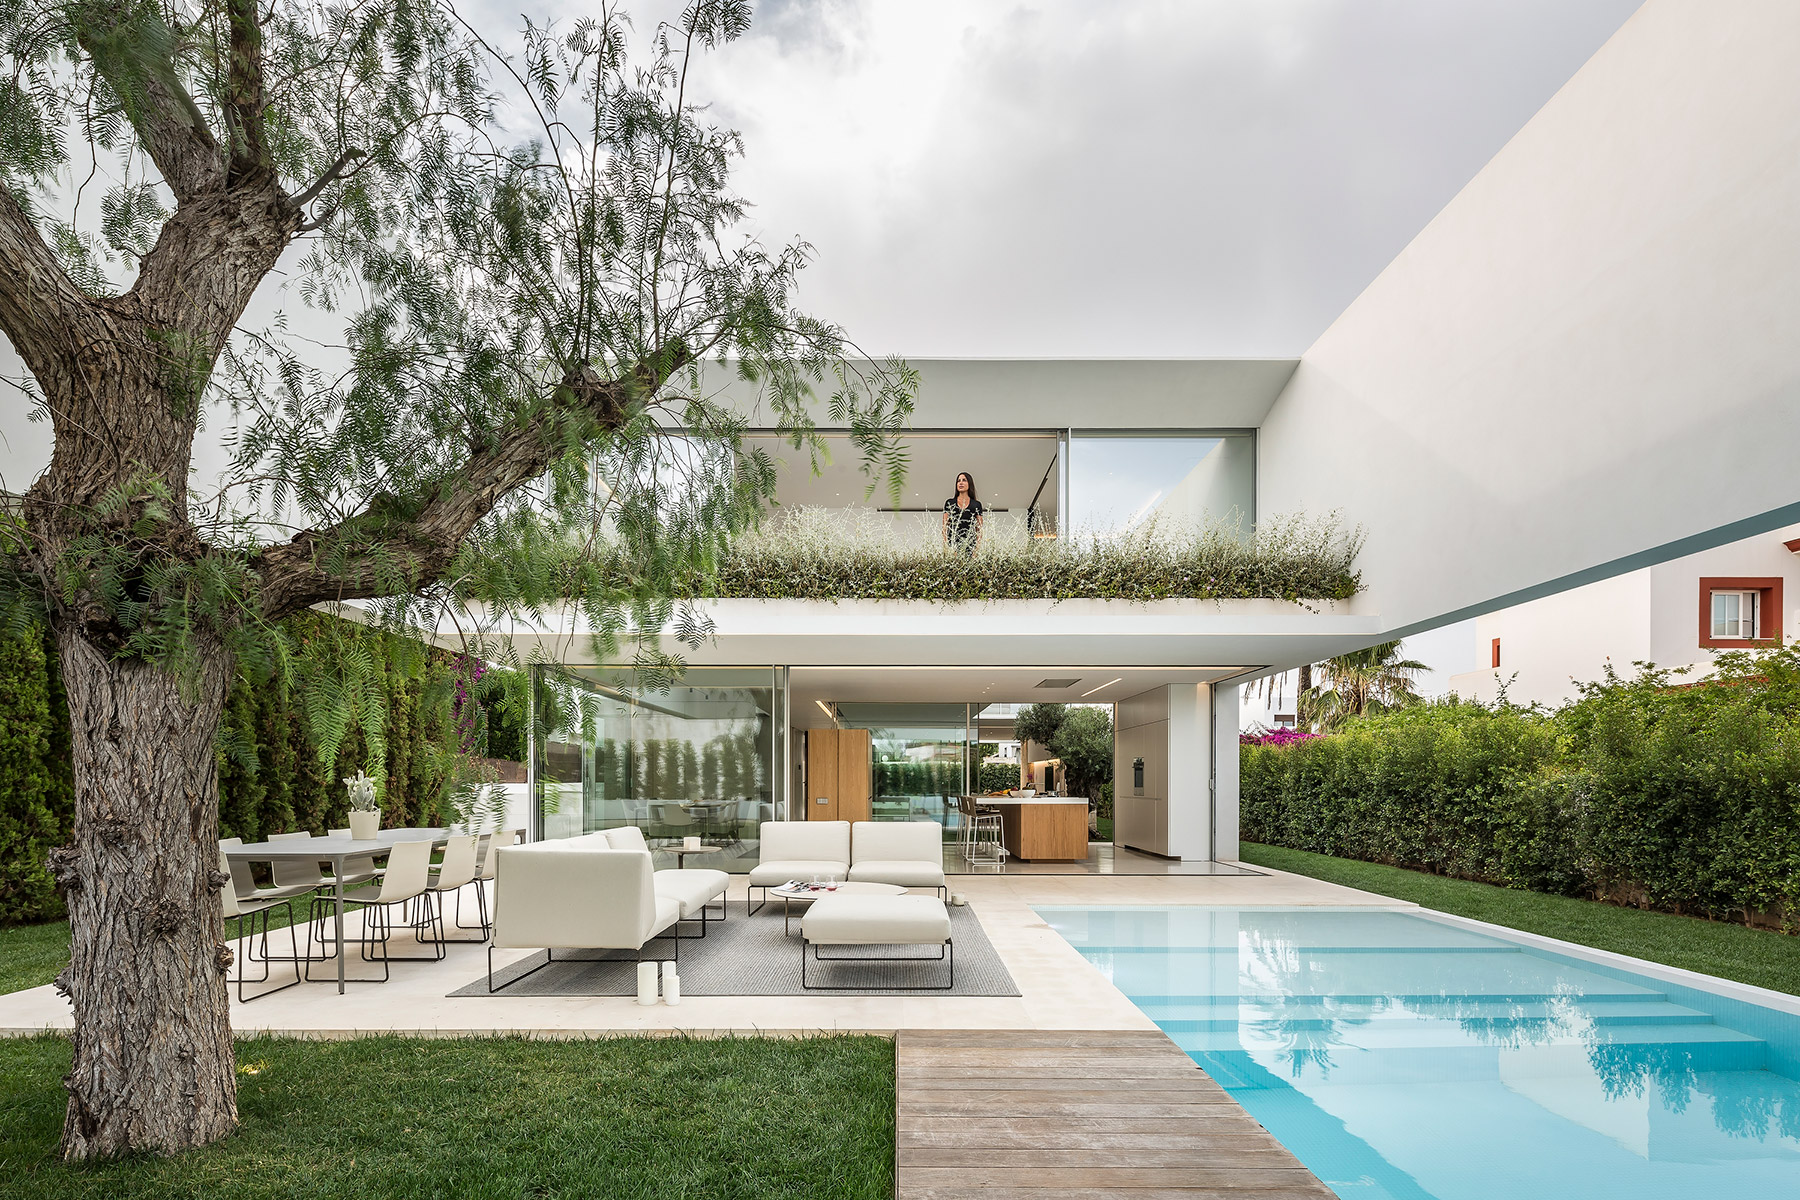 La casa de los tres árboles, un proyecto en Ibiza del estudio de arquitectura Gallardo Llopis